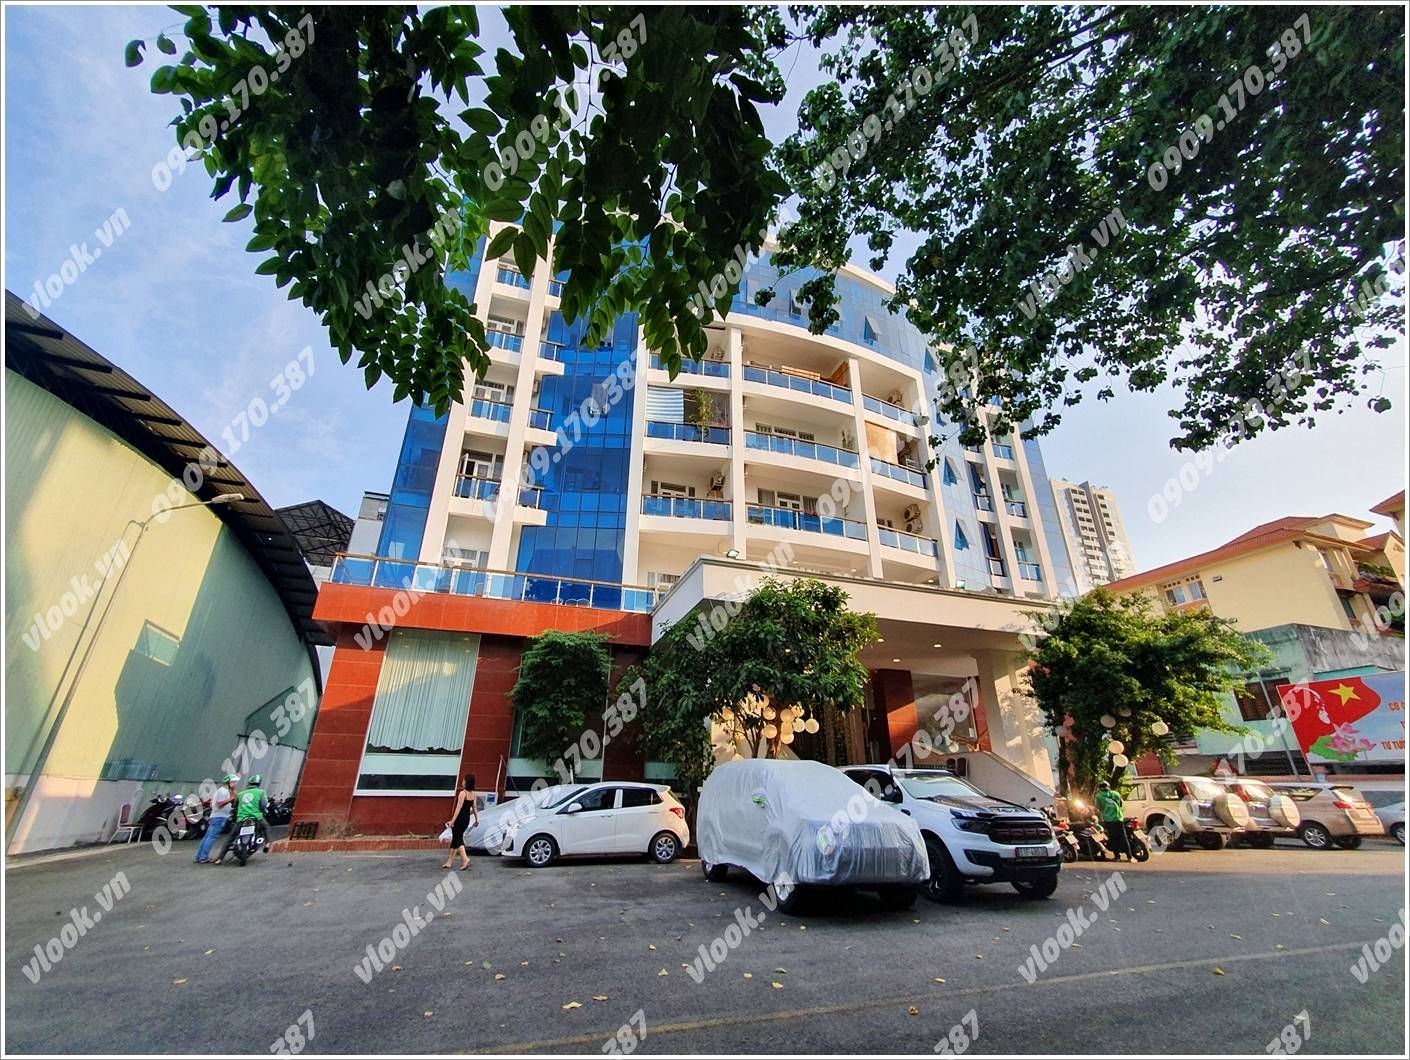 Cao ốc cho thuê văn phòng Thoáng Việt Building, Thành Thái, Quận 10, TPHCM - vlook.vn